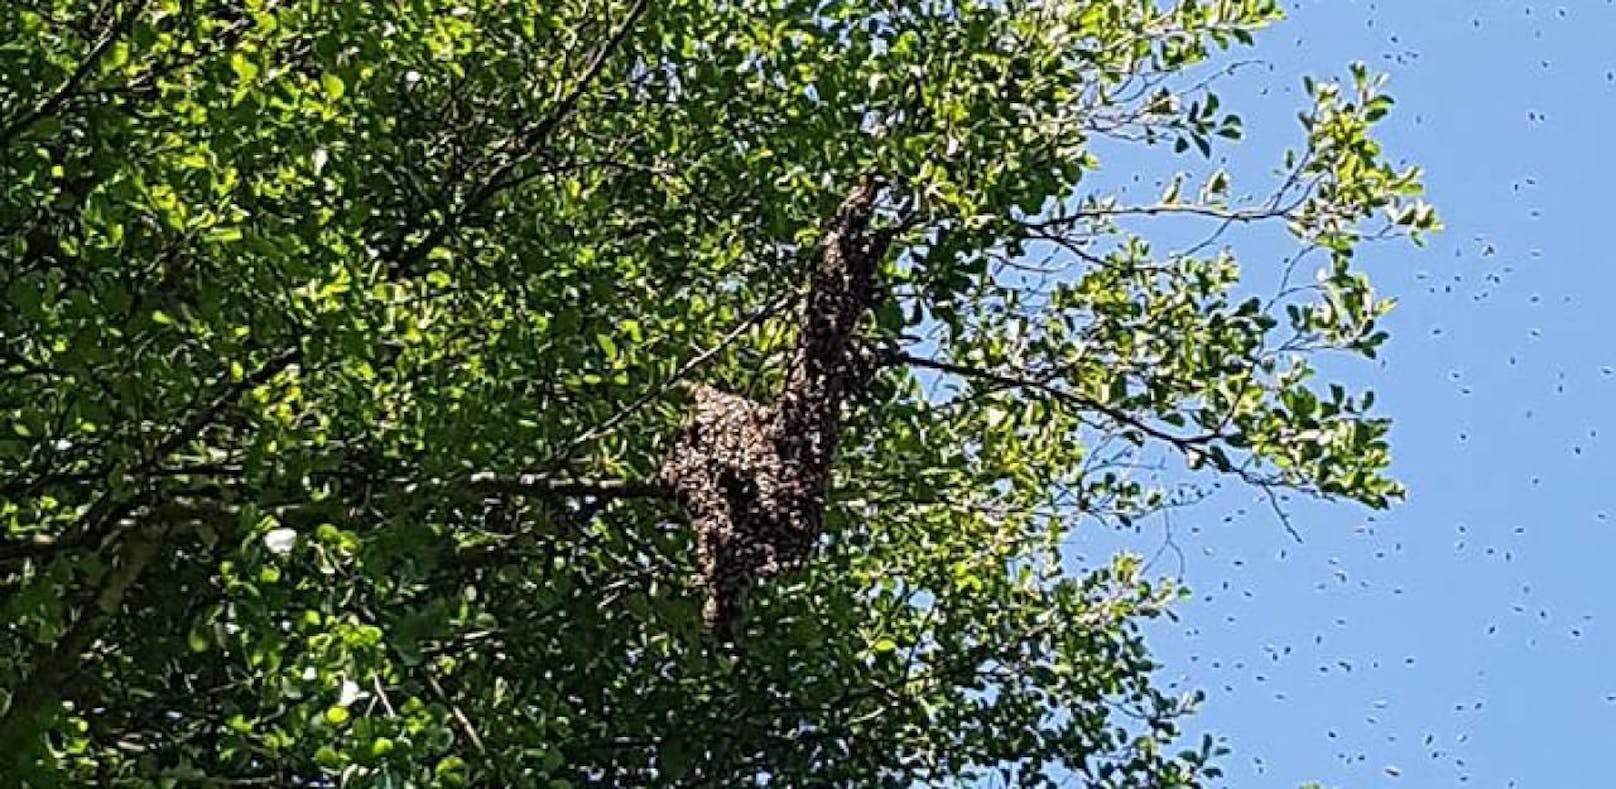 Bienenvolk sammelte sich in 8 Metern Höhe auf Baum